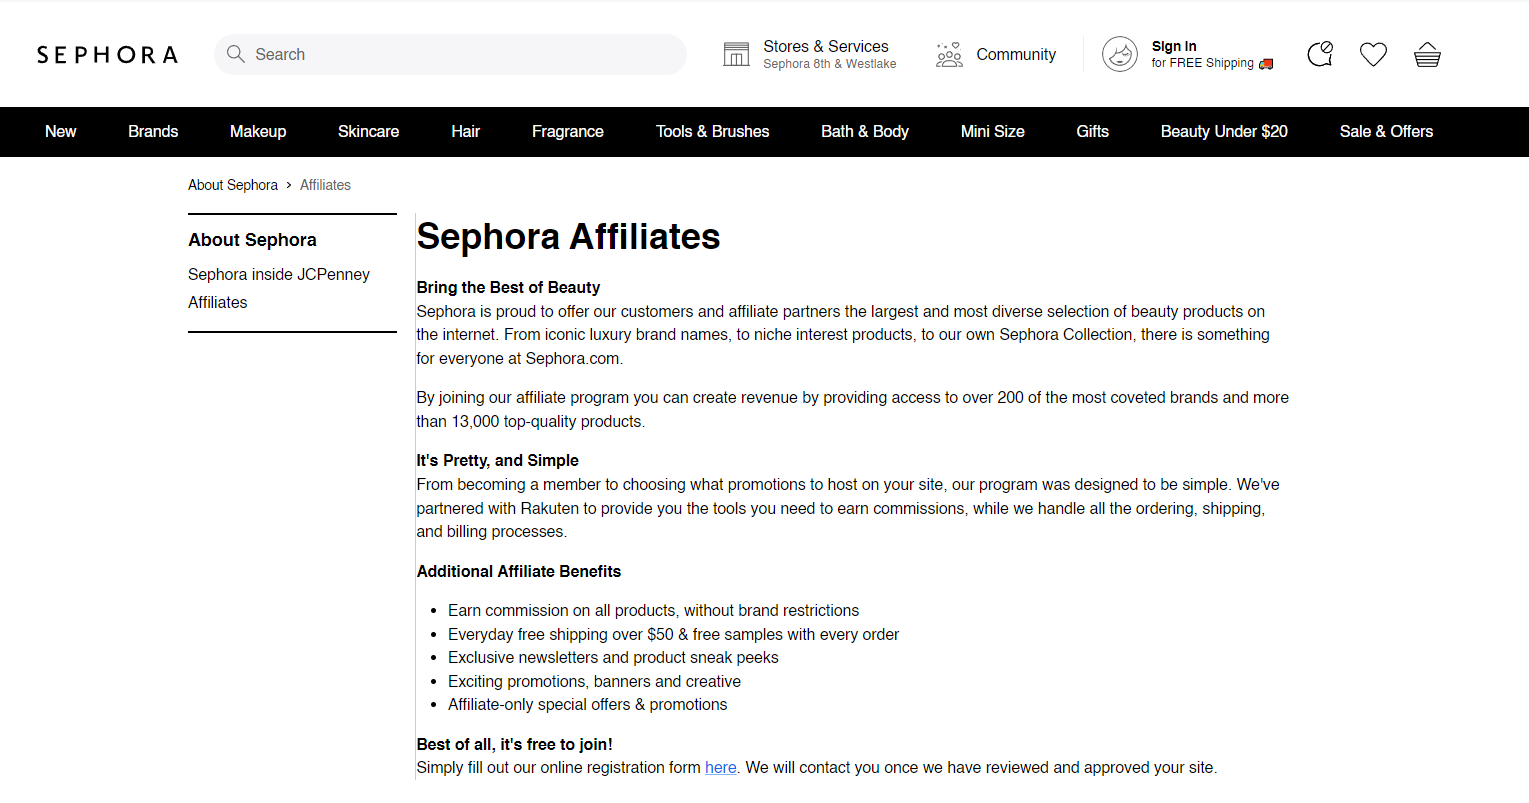 Sephora affiliates